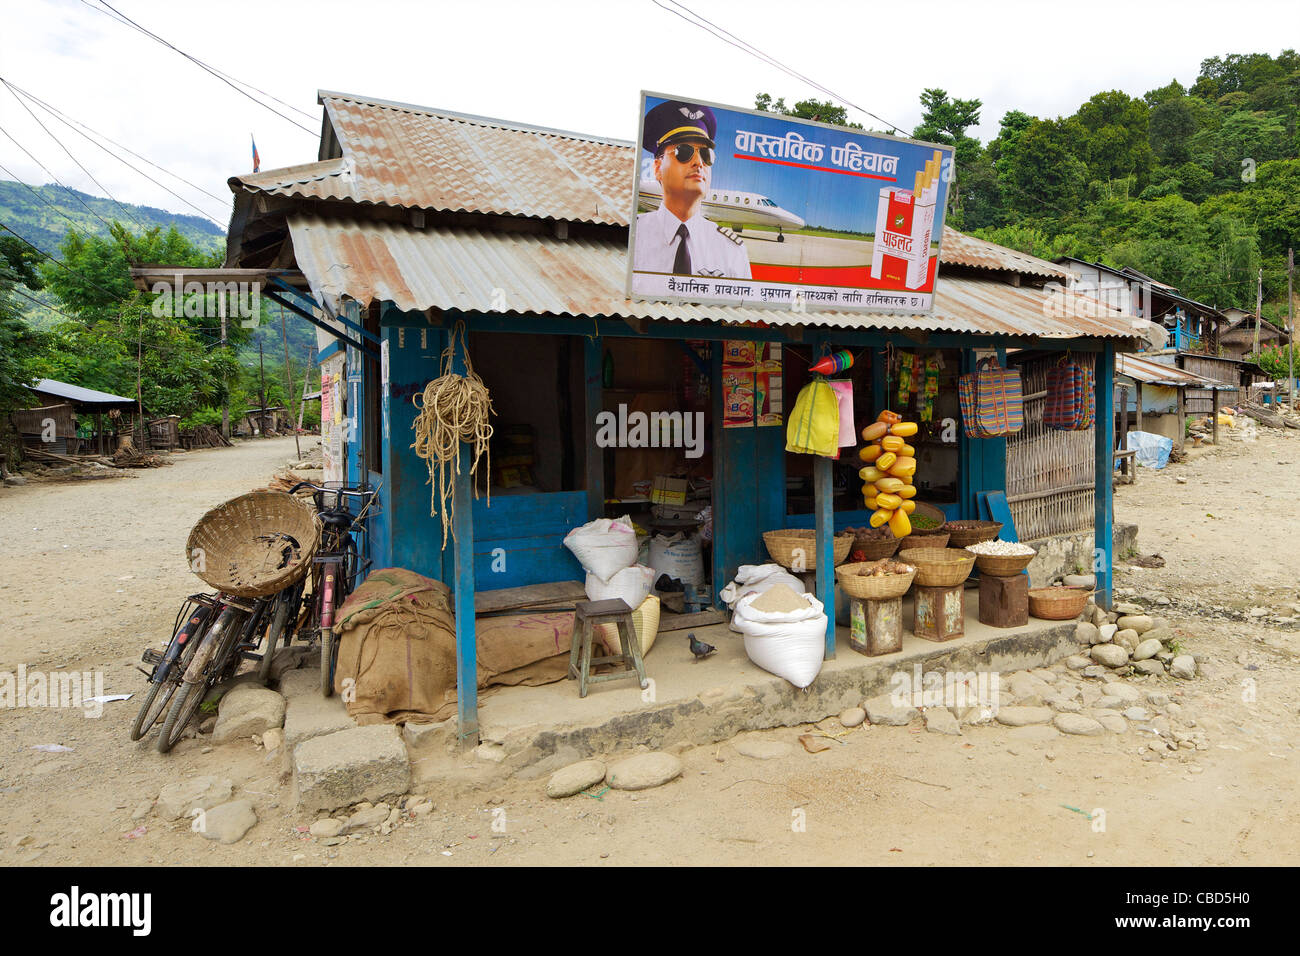 Pubblicità delle sigarette, compagnia aerea pilota, negozio di fronte, Chatara town, Terai, Nepal, Asia Foto Stock